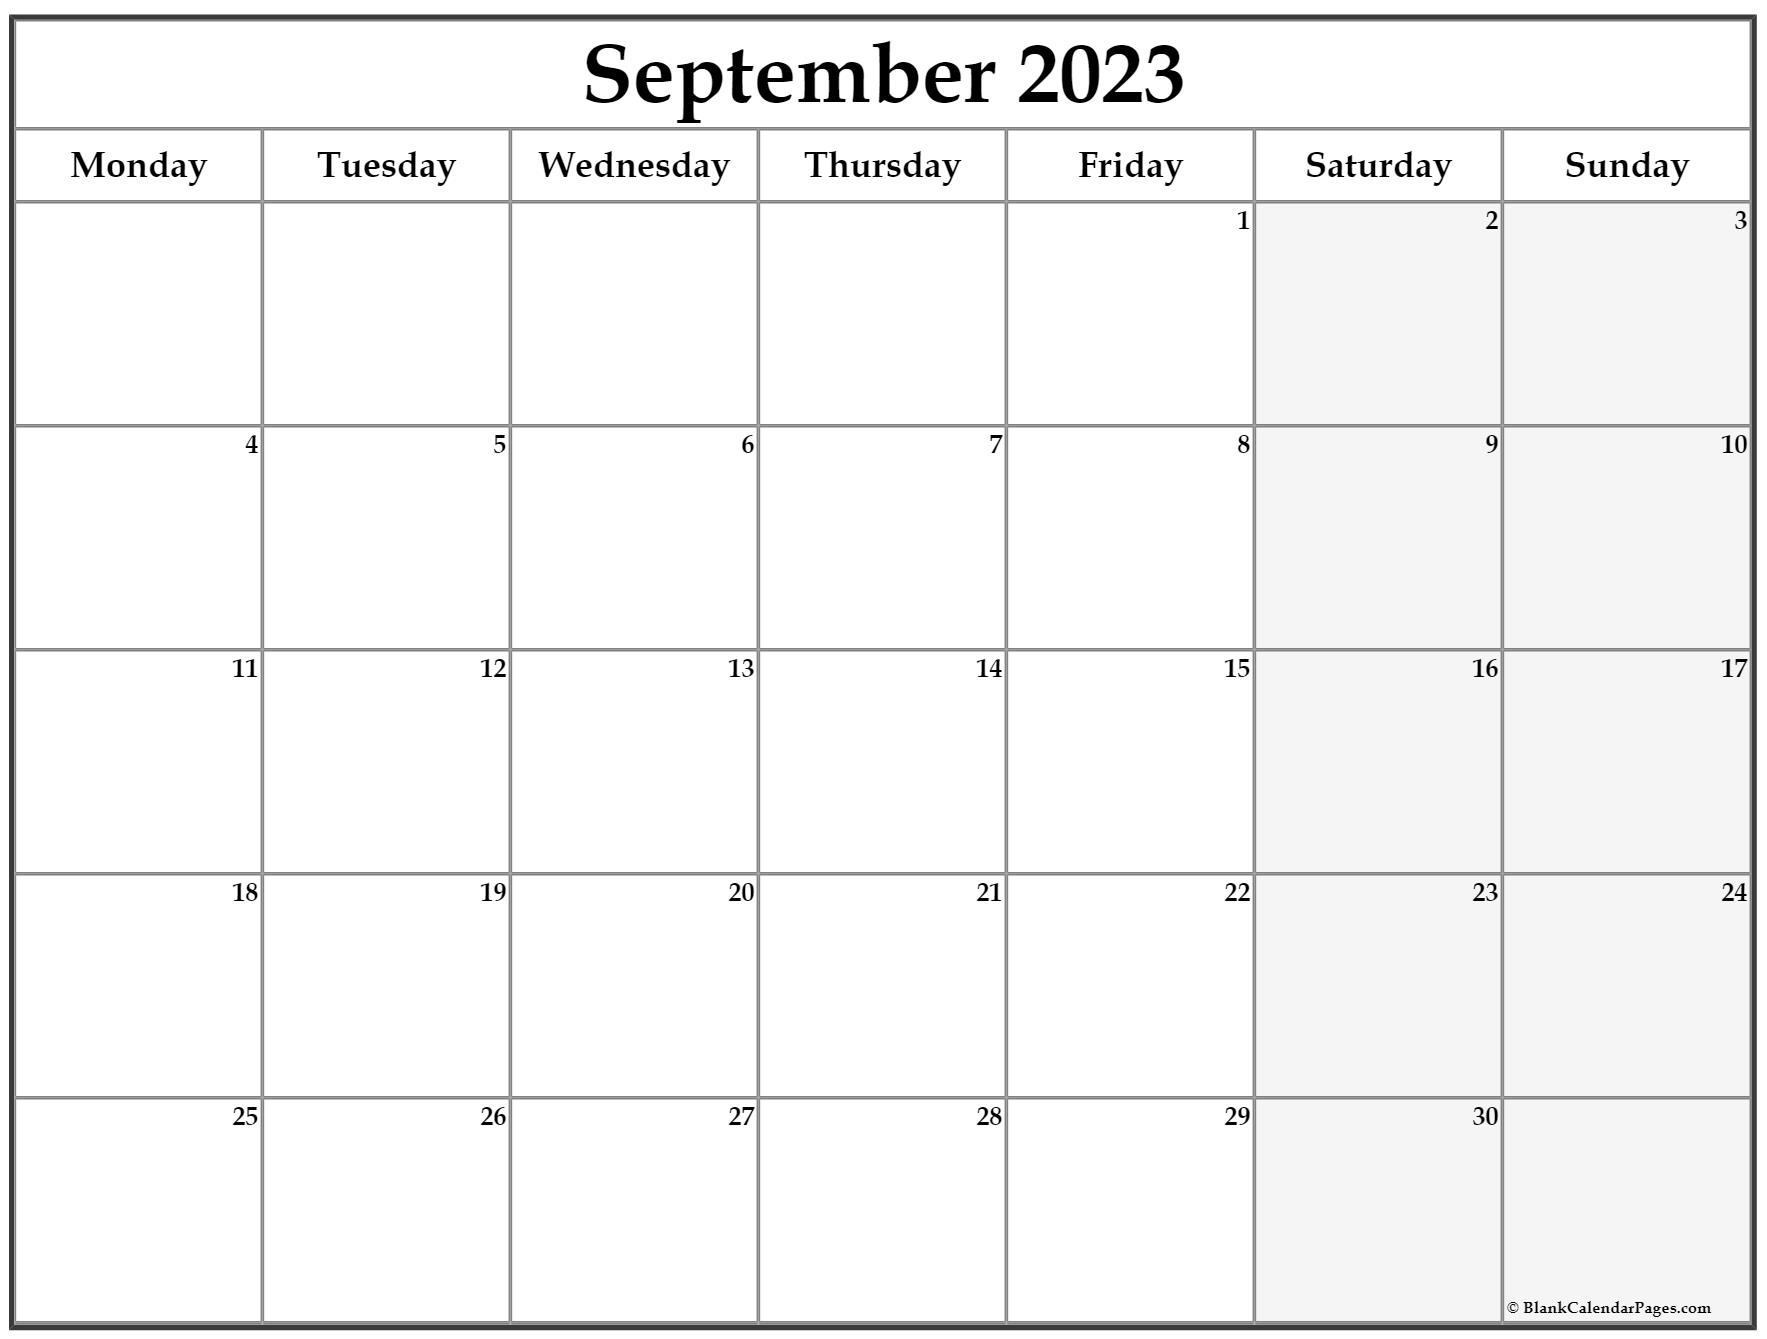 september-2023-monday-calendar-monday-to-sunday-pelajaran